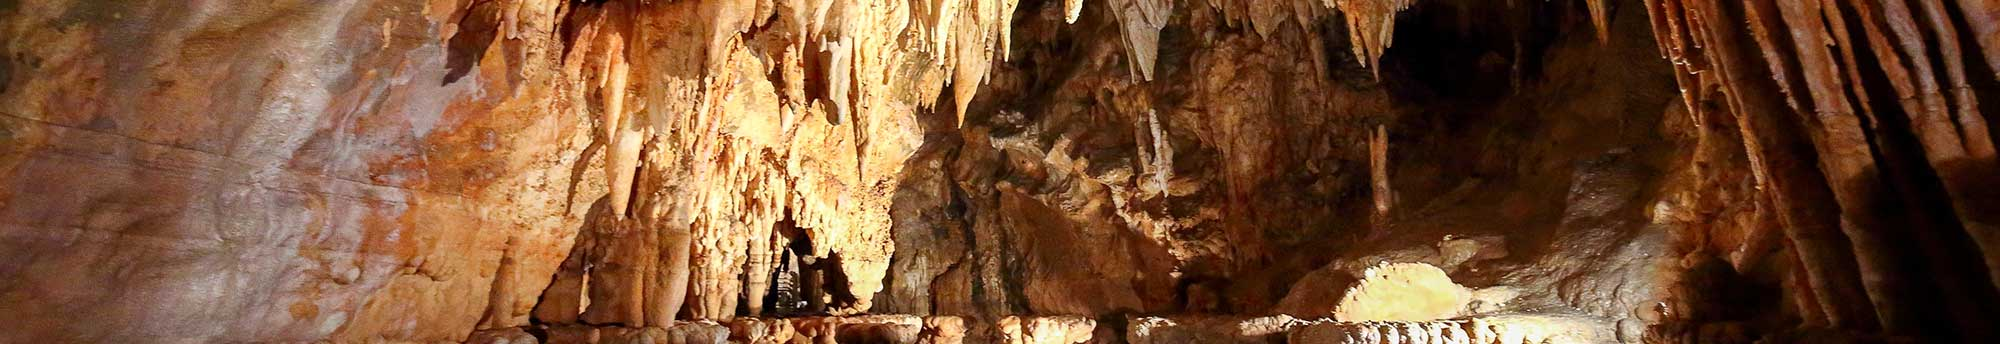 Biglietti Grotte di Toirano